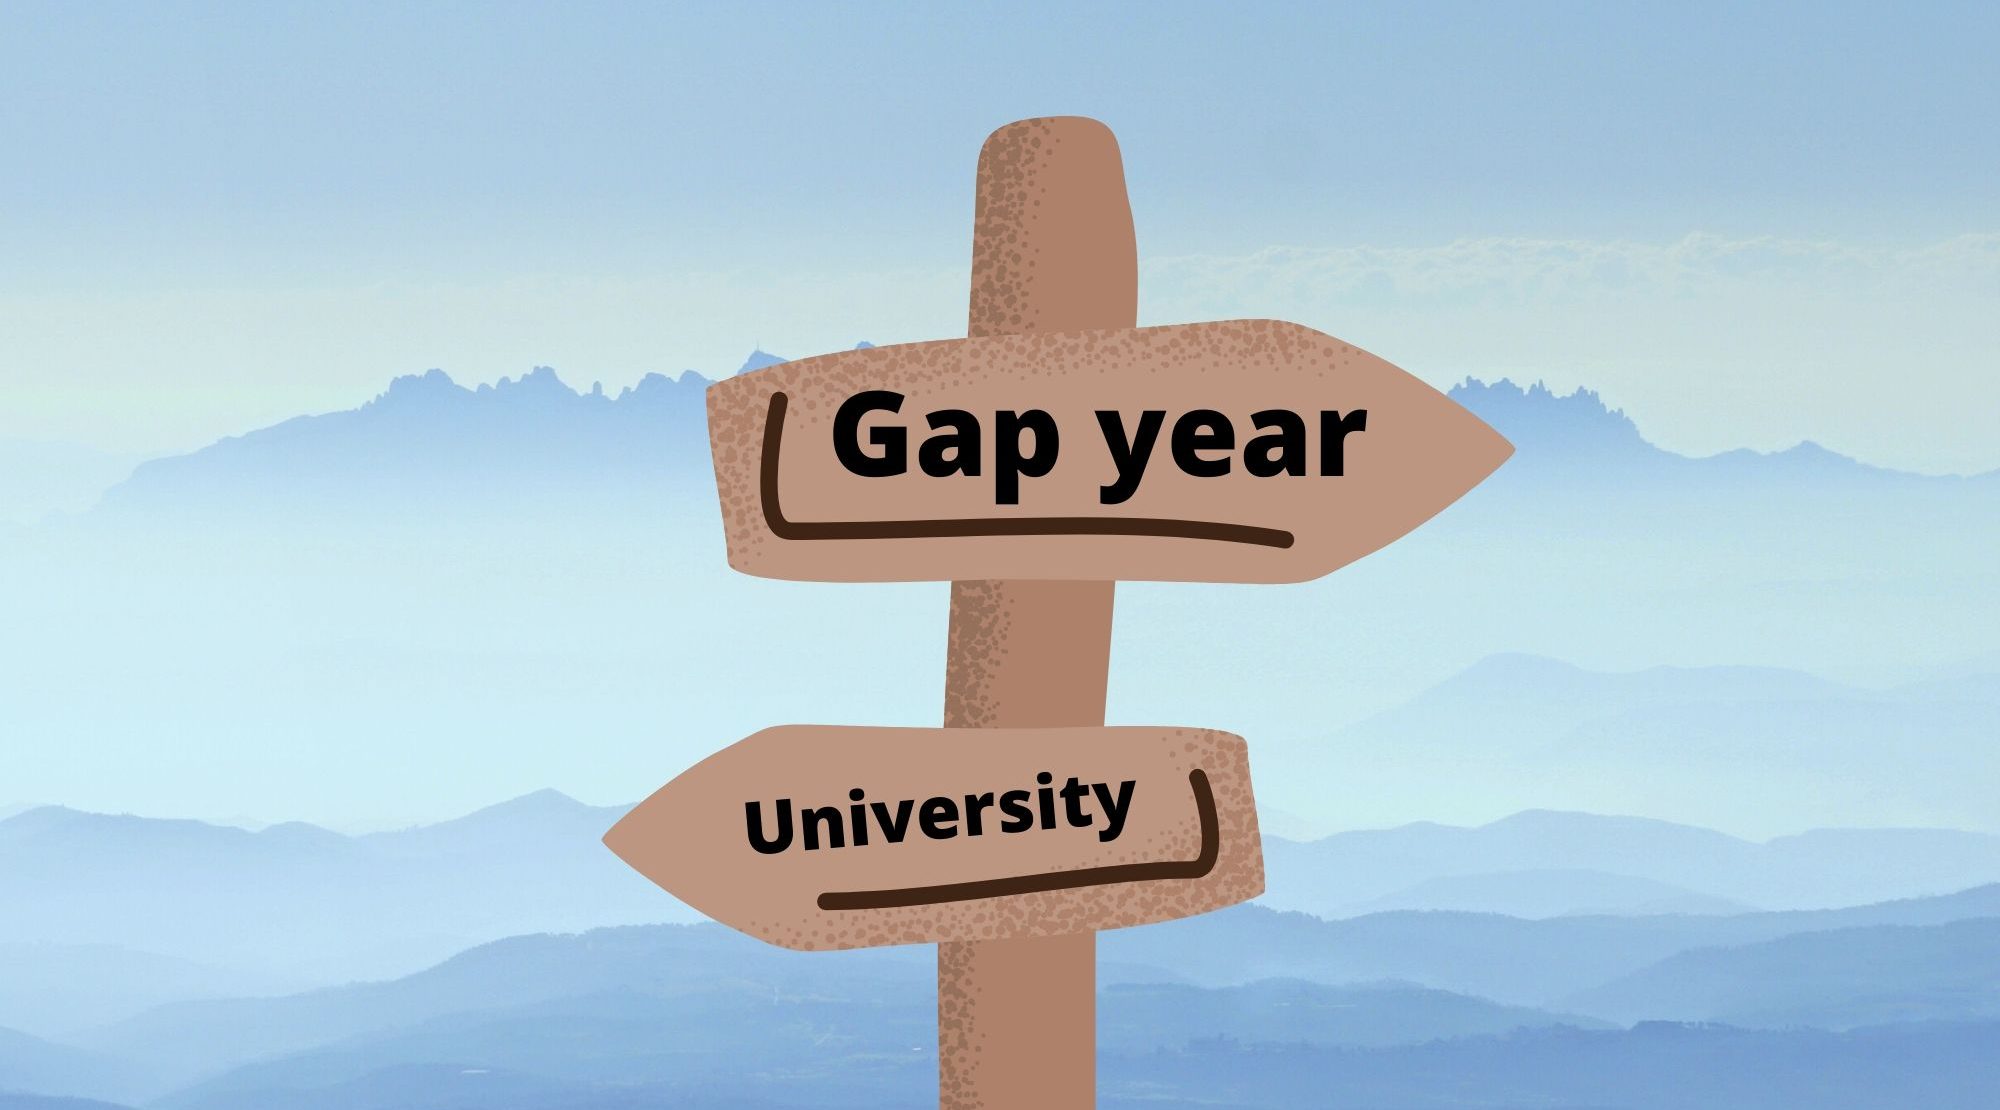 Experience gap. Gap year. Take a gap year. Gap year важность. Gap year students.